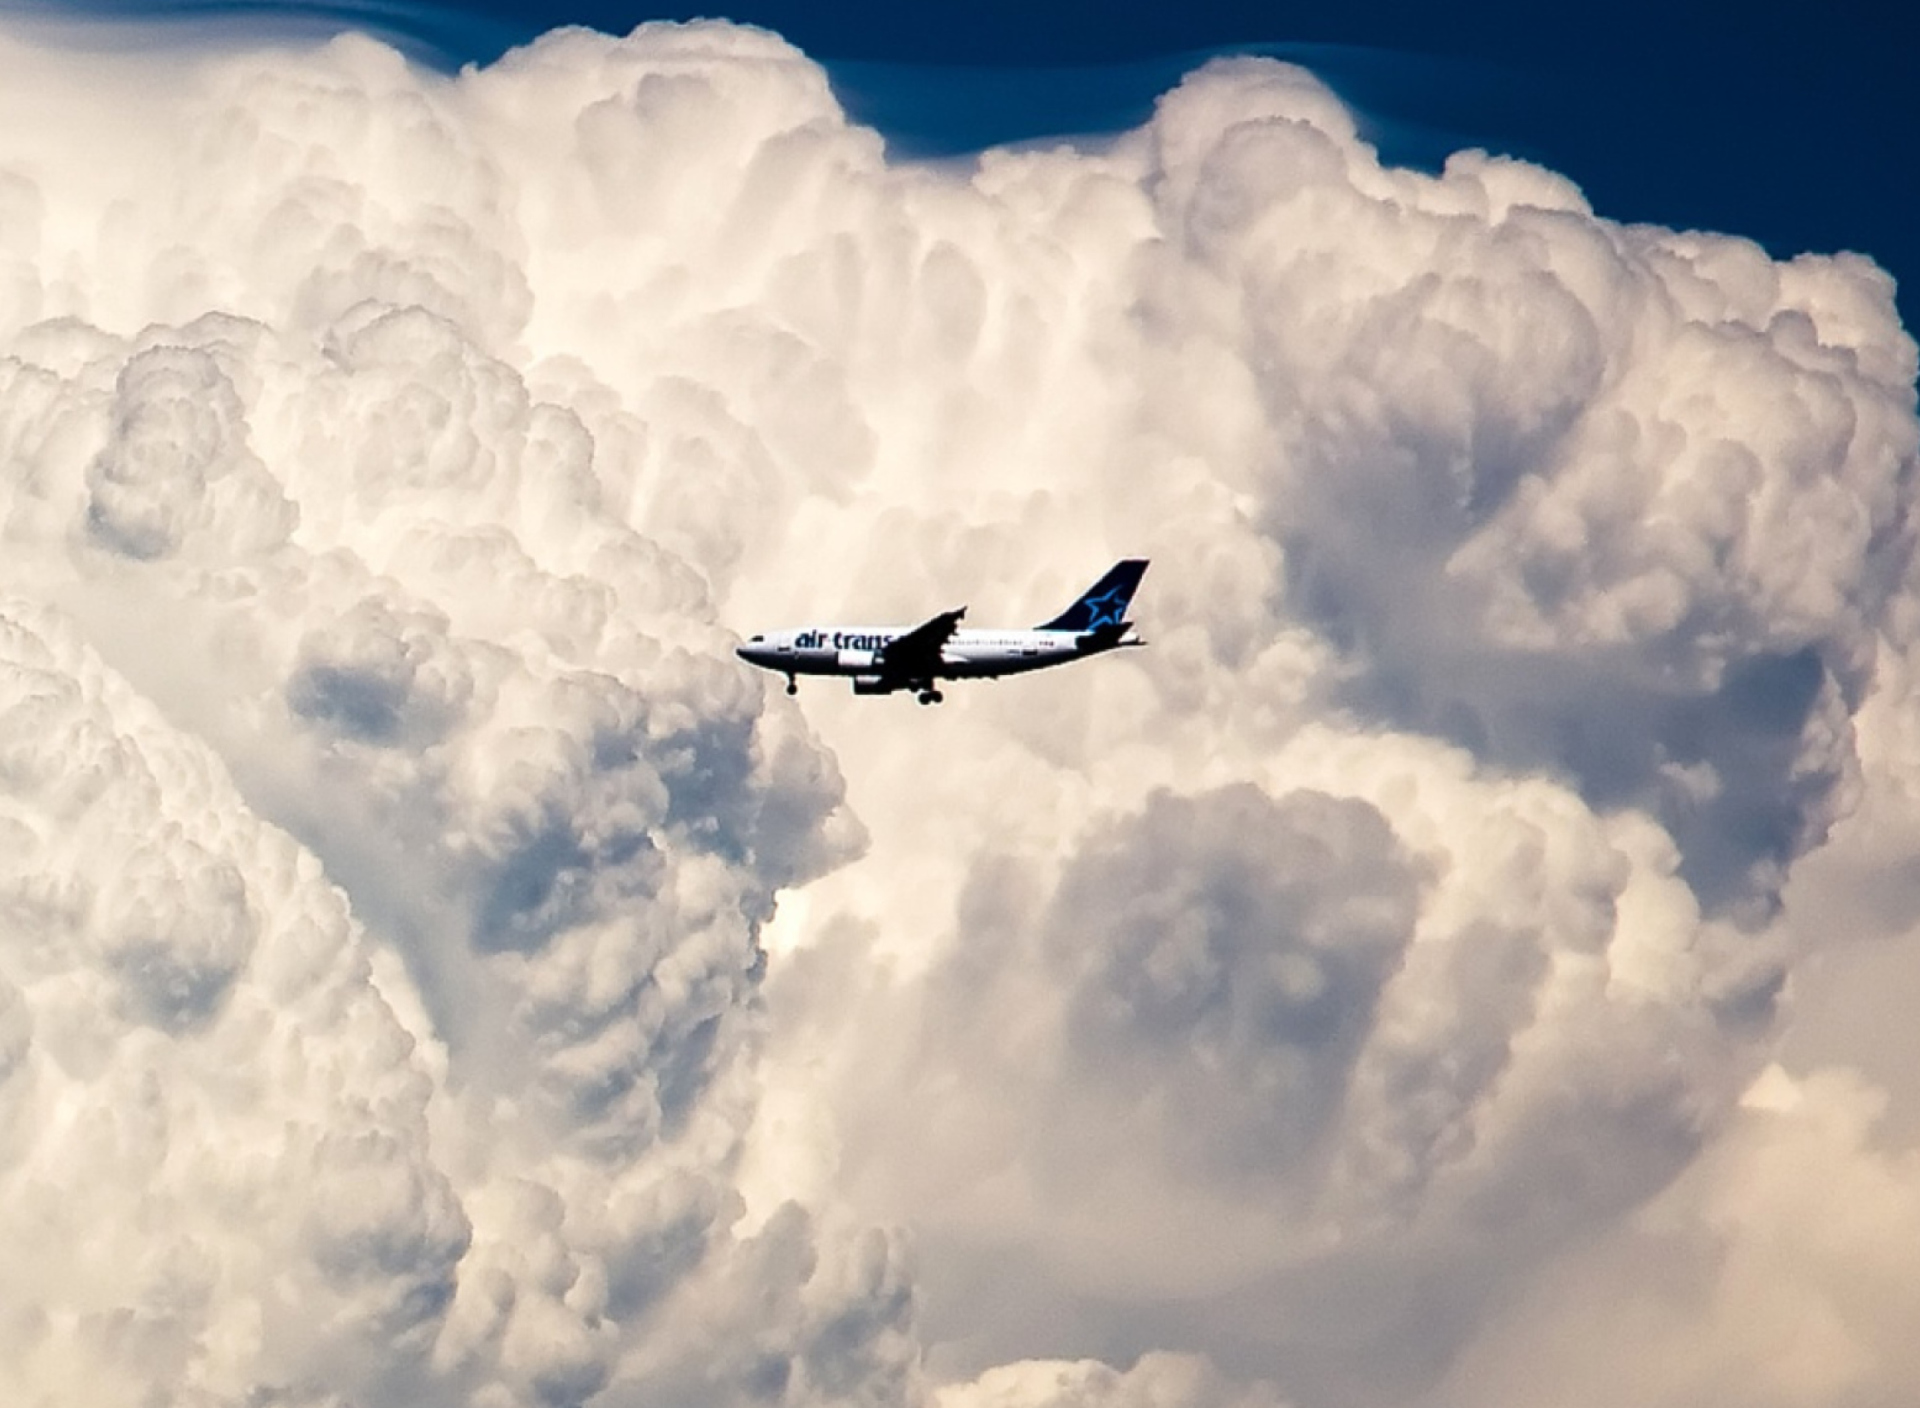 Sfondi Plane In The Clouds 1920x1408